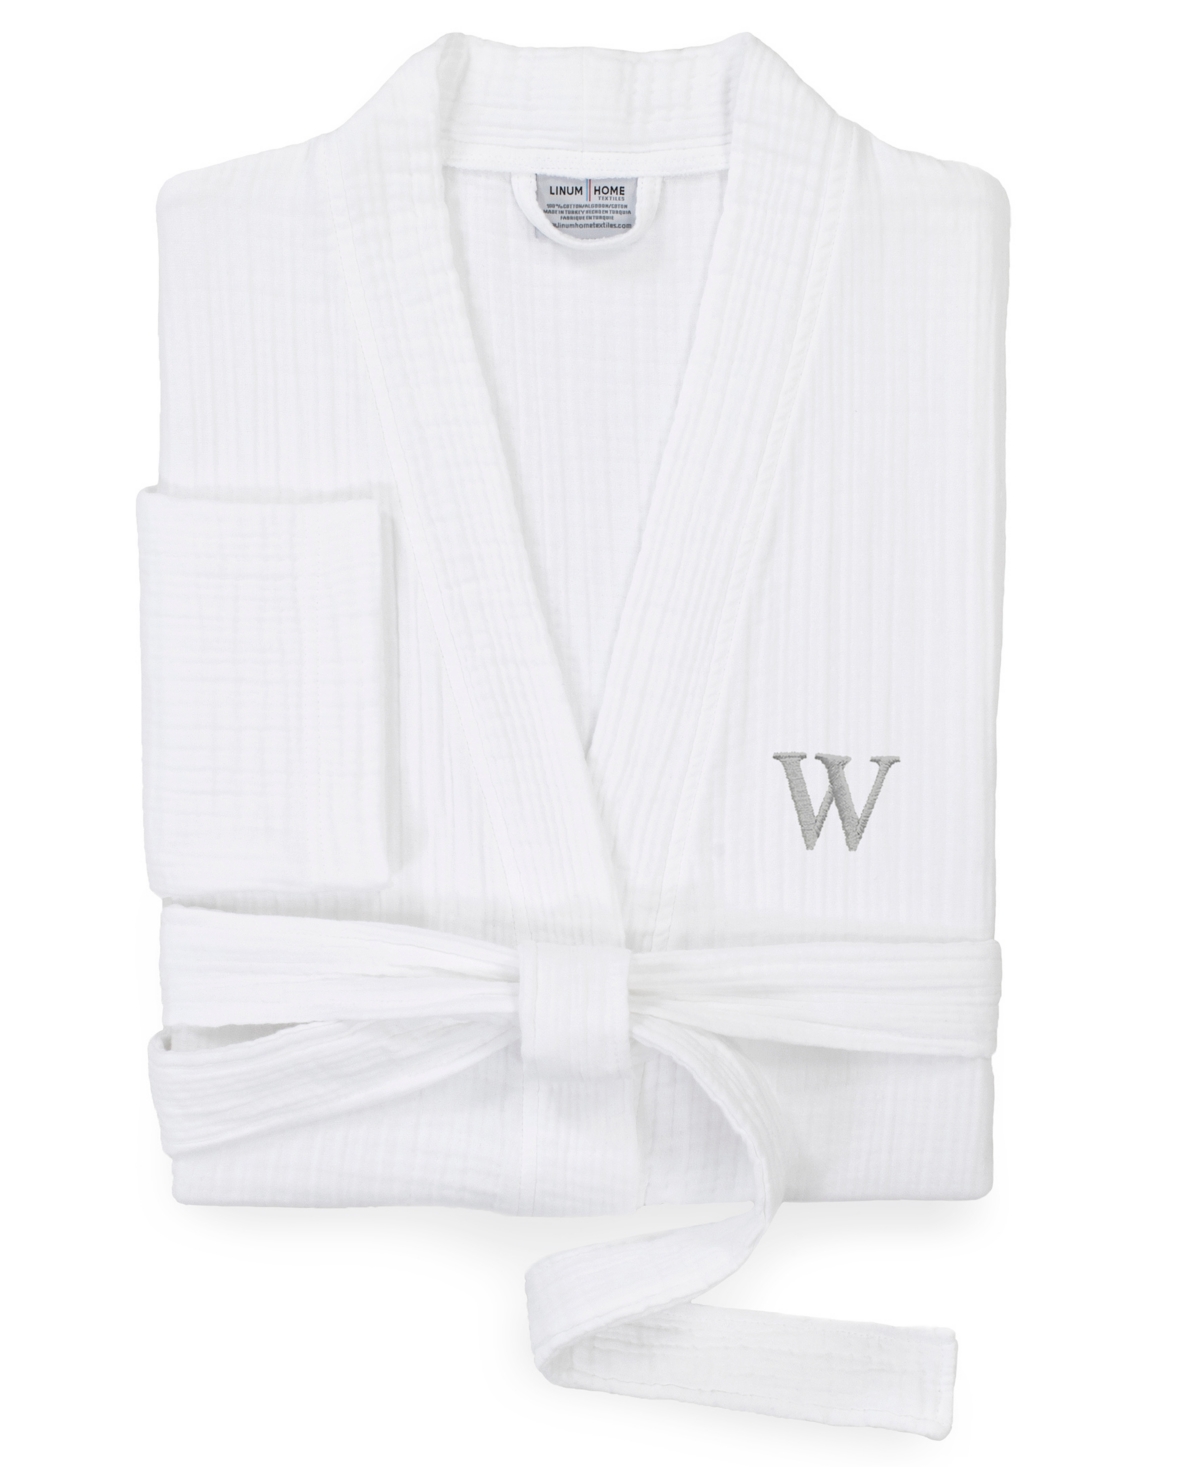 Smyrna Personalized Hotel/Spa Luxury Robes - White-Z